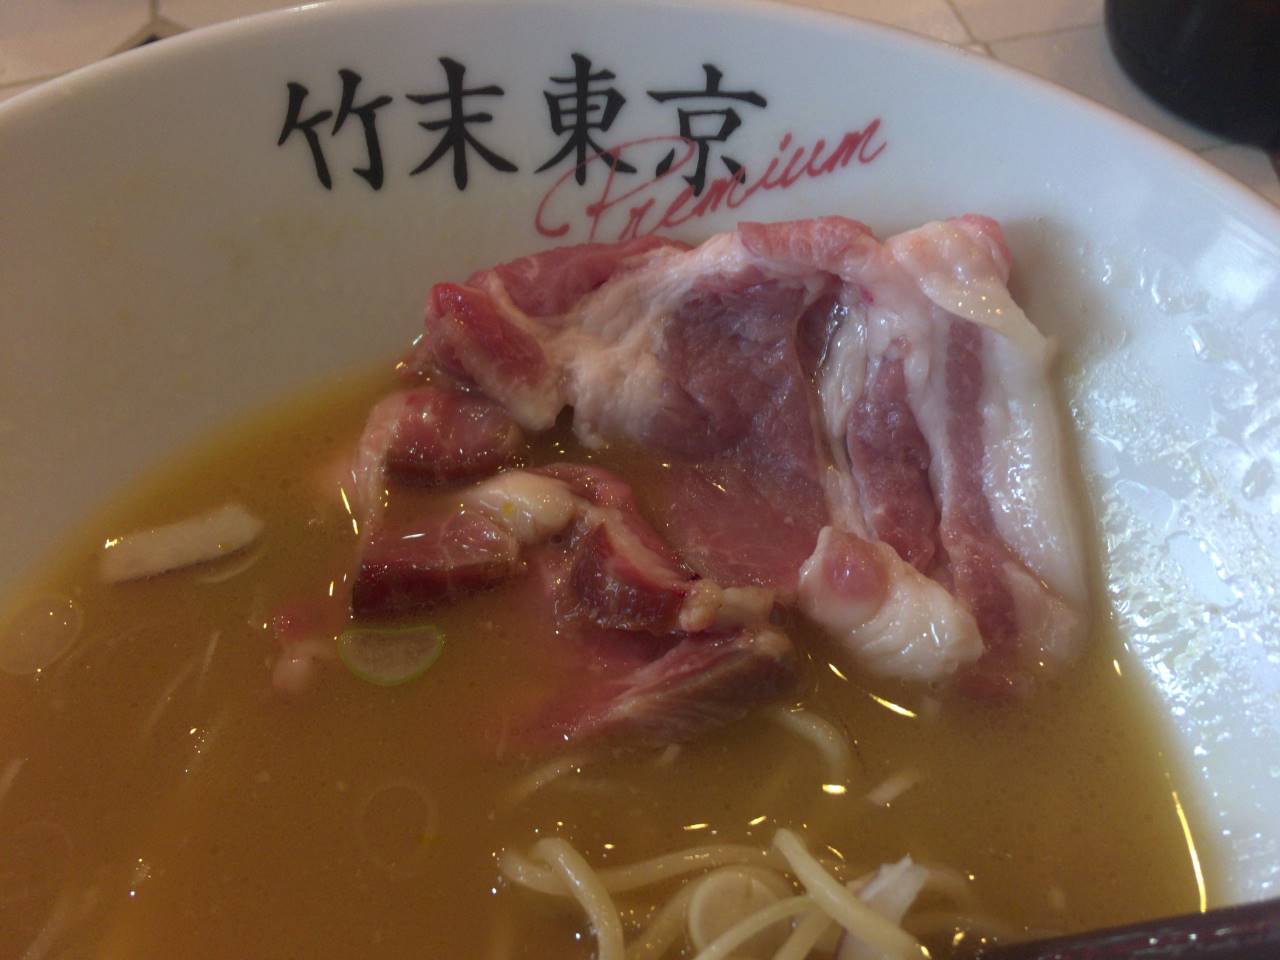 竹末東京プレミアム5周年記念のラーメン竹末東京プレミアム5周年記念の豚肉